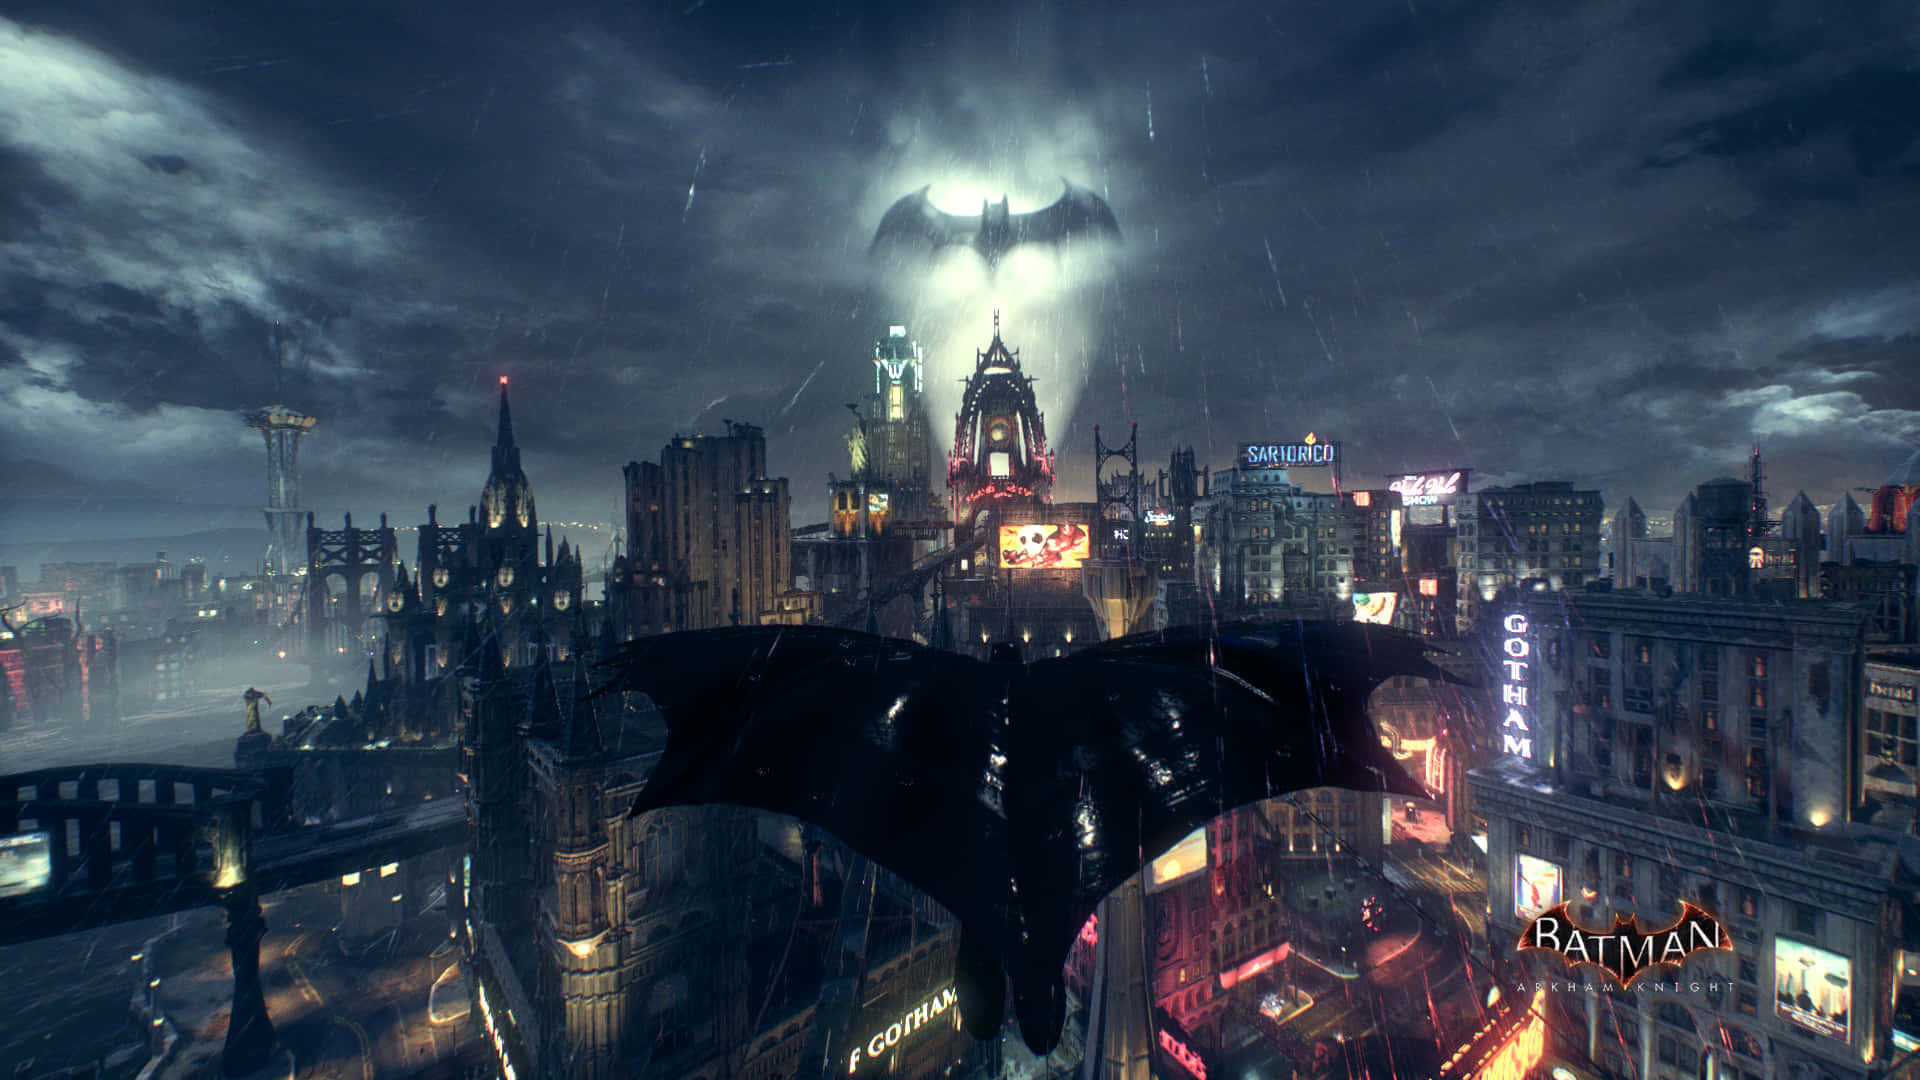 Fange skønheden af Gotham City. Wallpaper